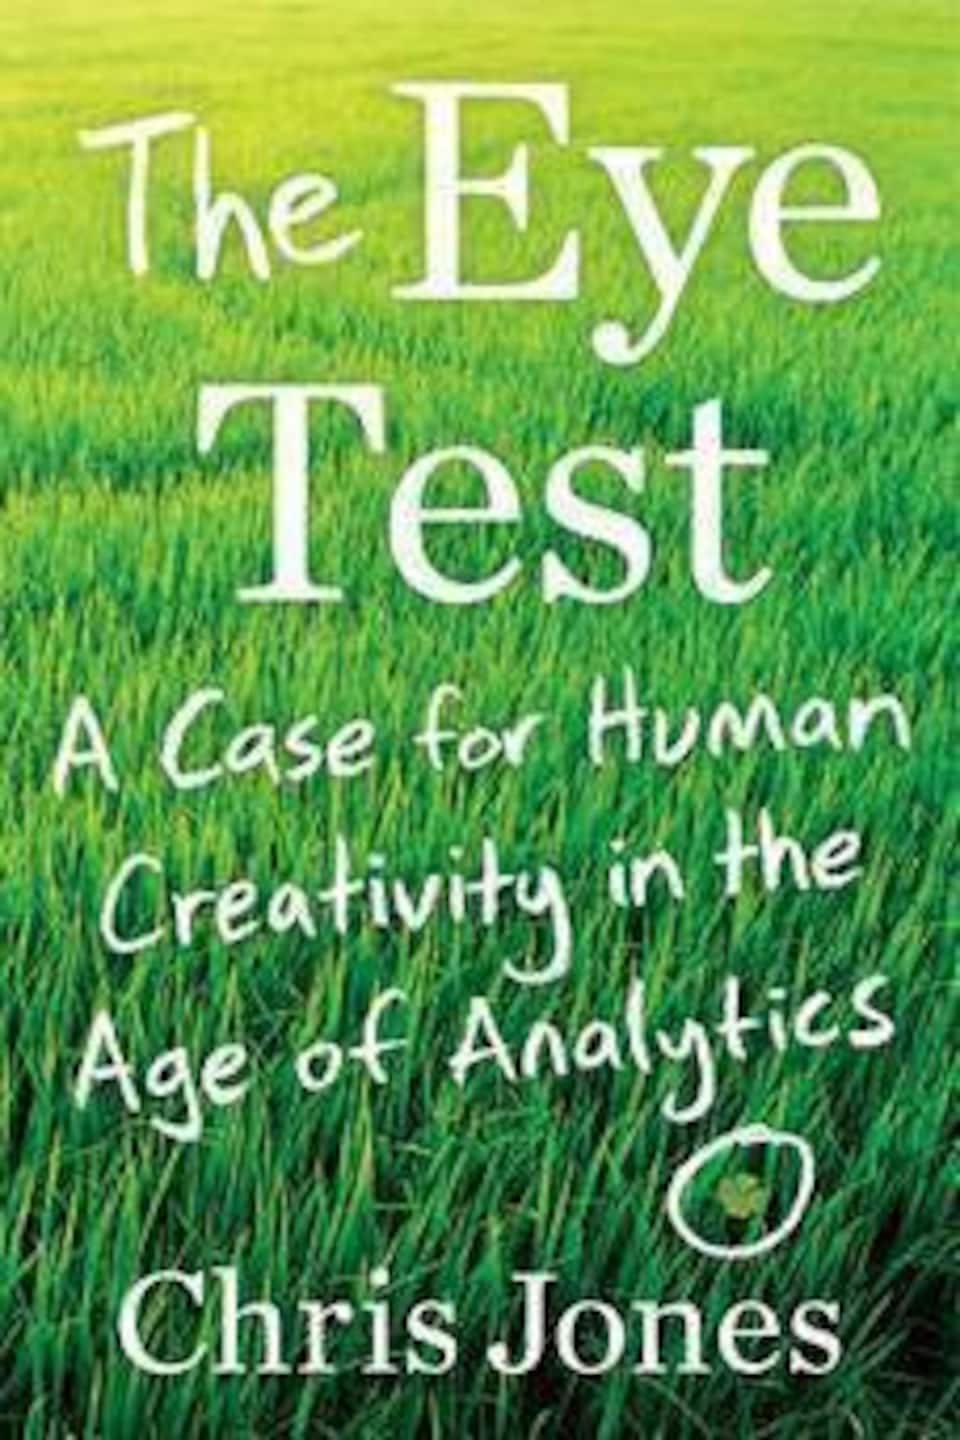 Couverture du livre The Eye Test, avec le titre du livre et l'auteur écrits en blanc sur un fond de pelouse